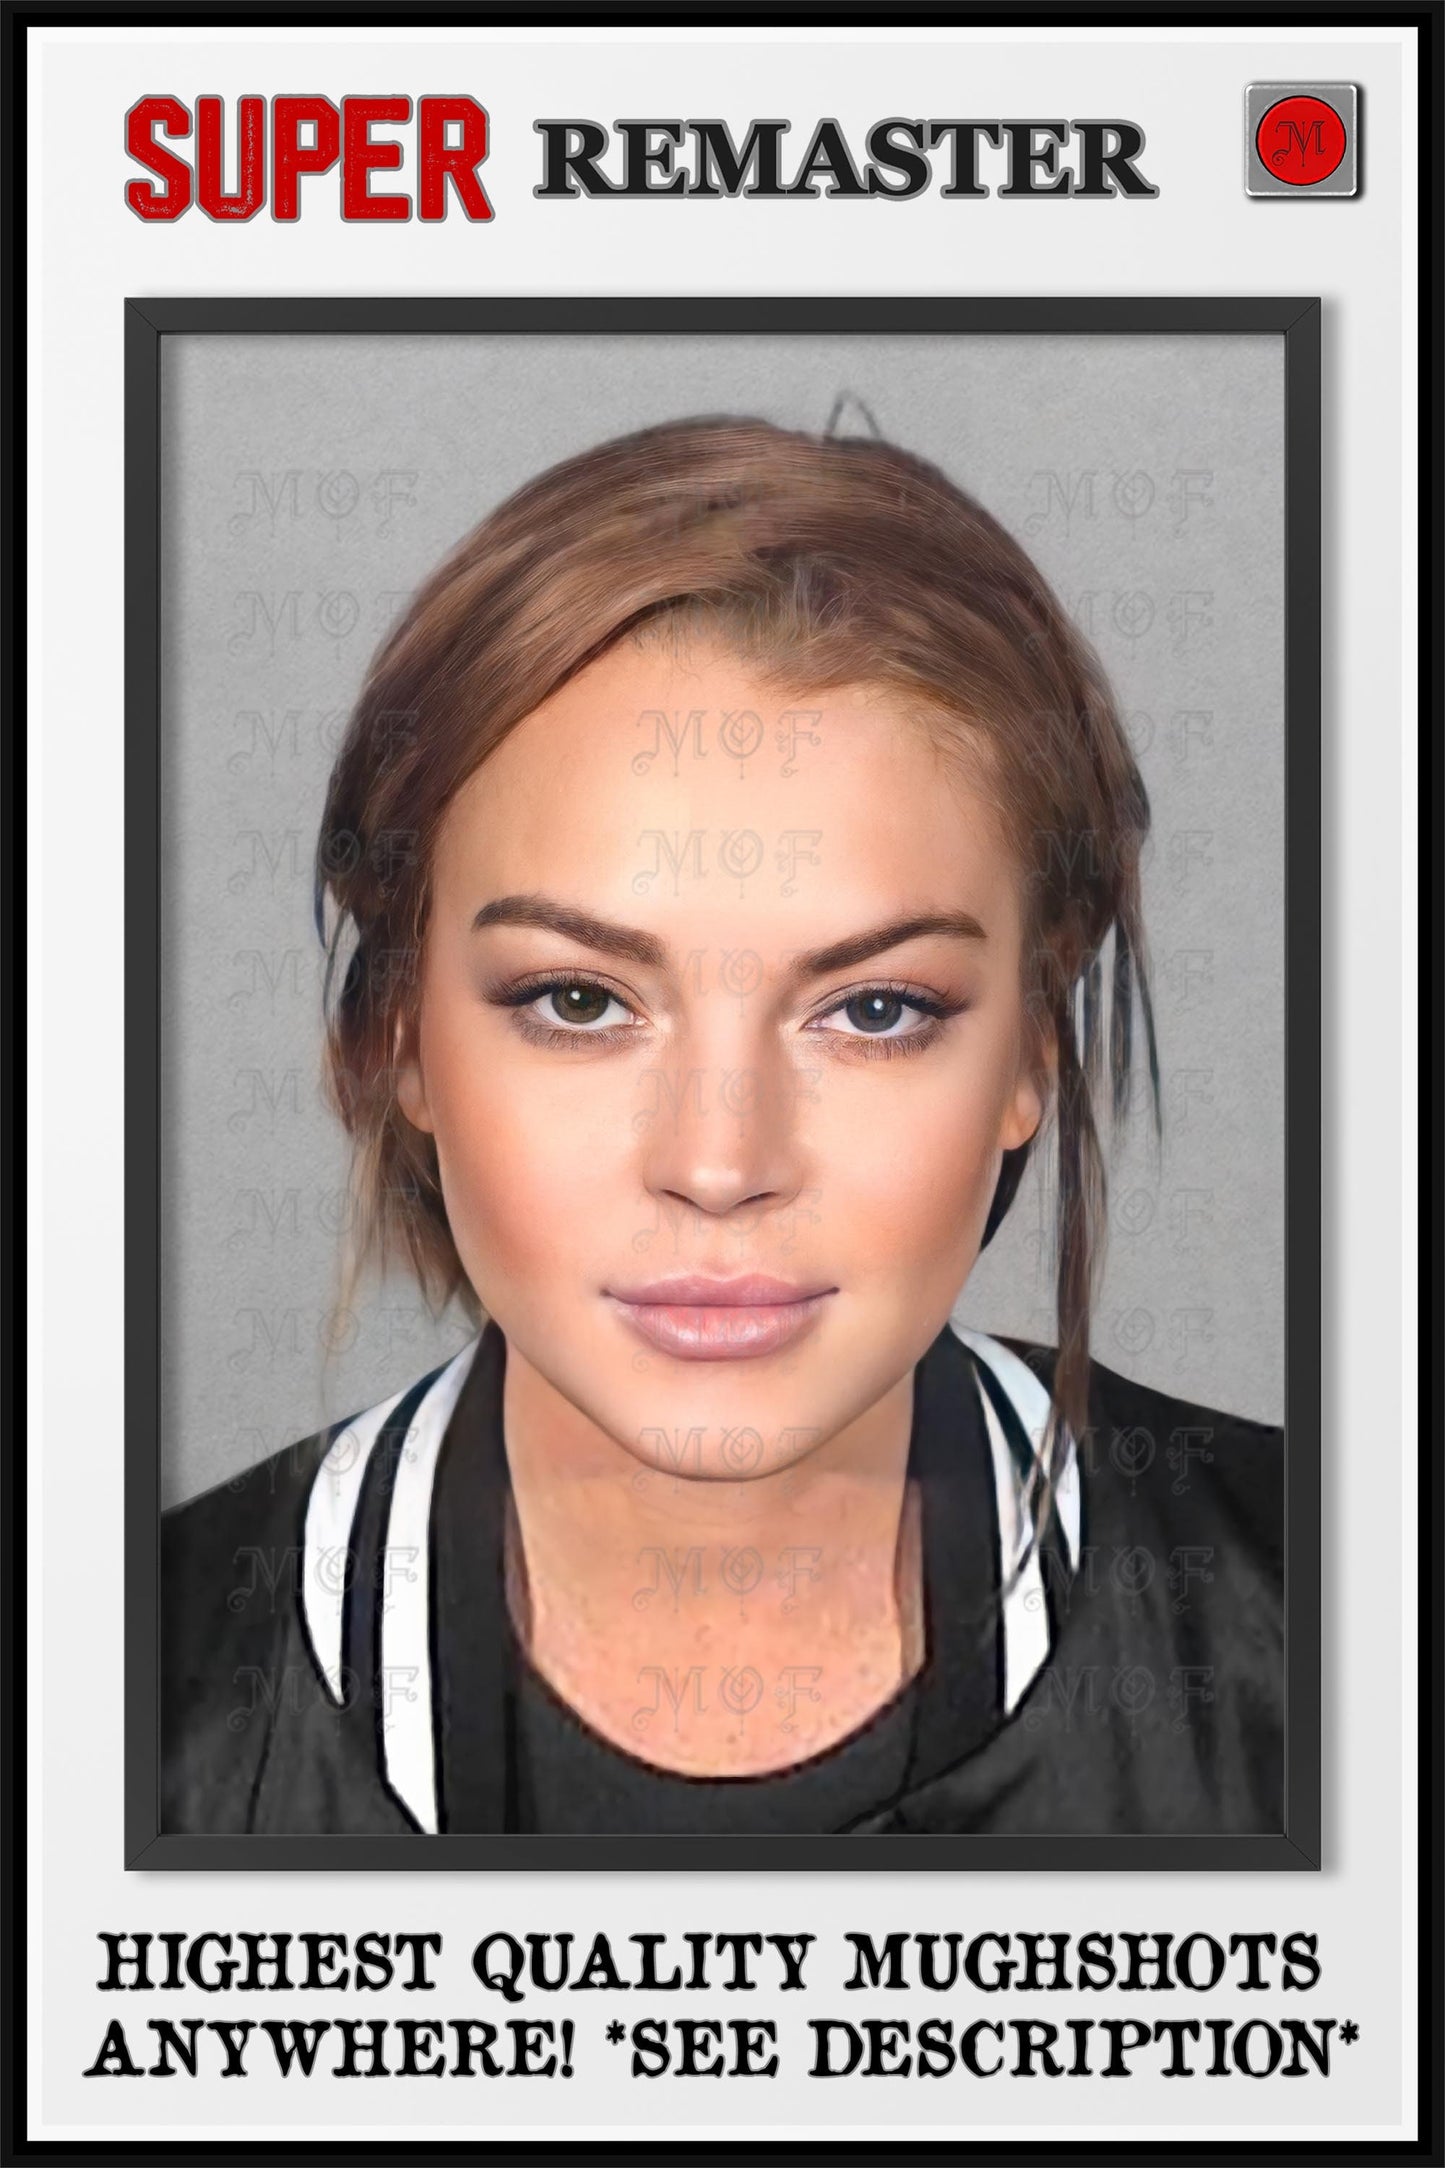 Lindsay Lohan Mugshot Celebrity Poster REMASTERED #46 MUG